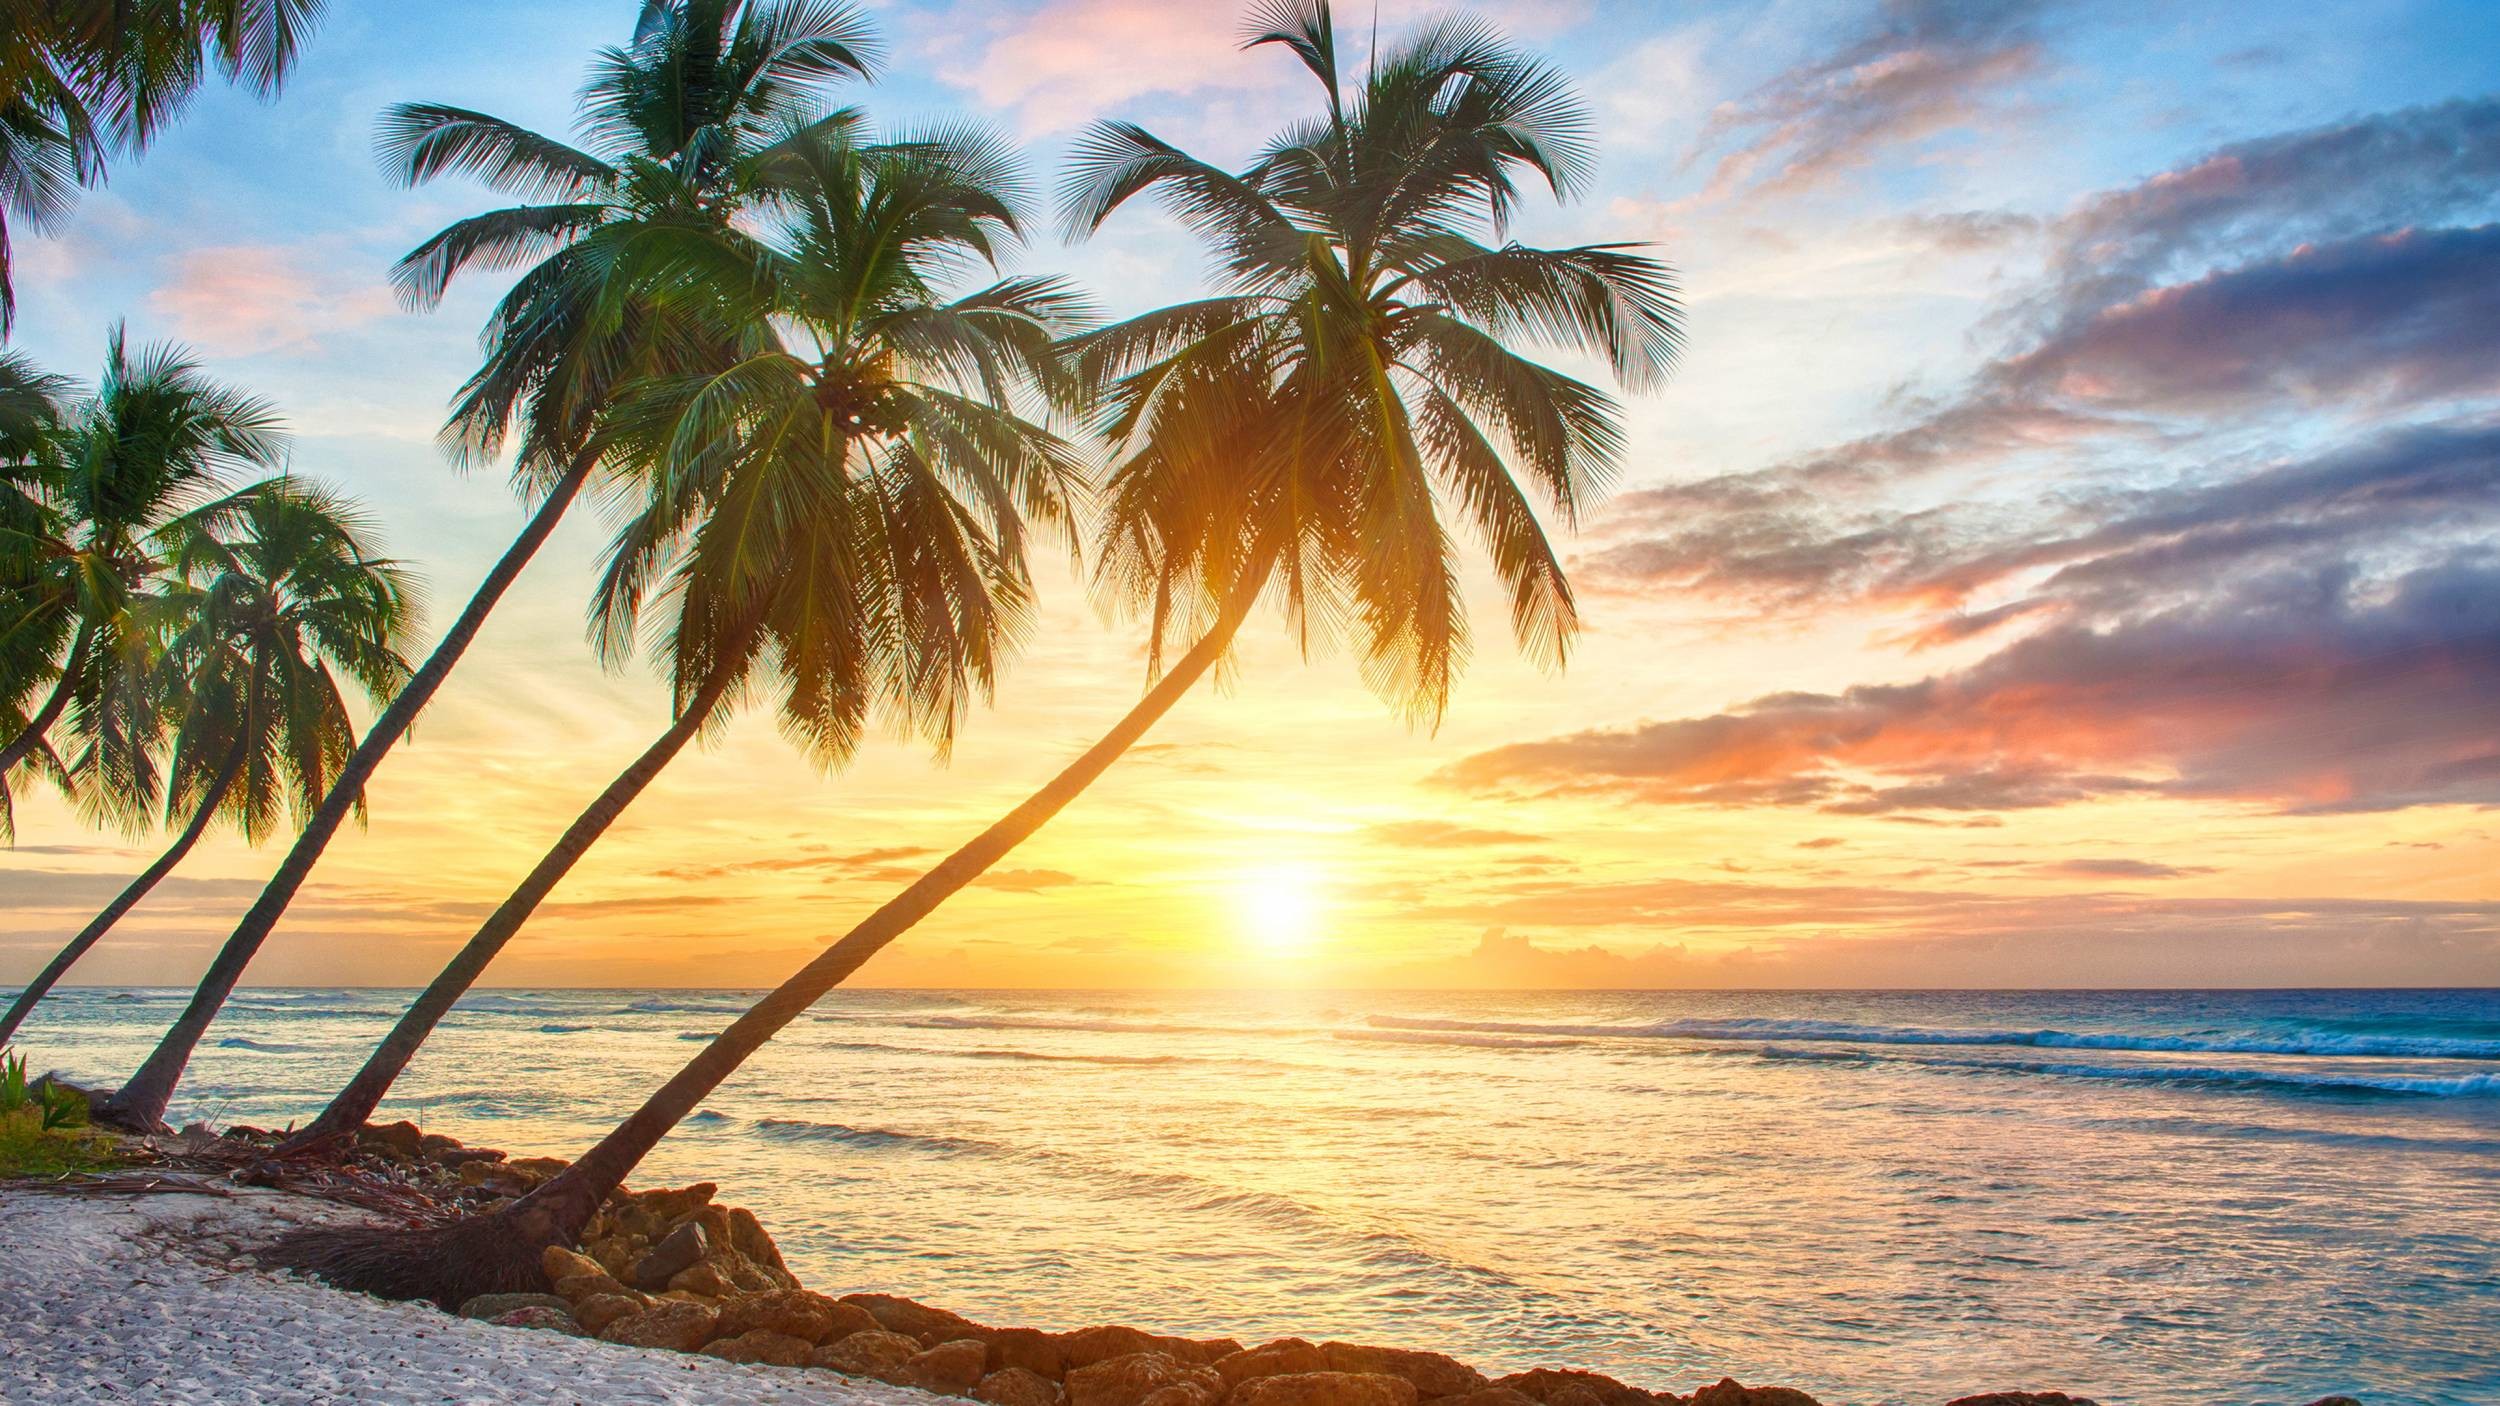 tropical desktop background images